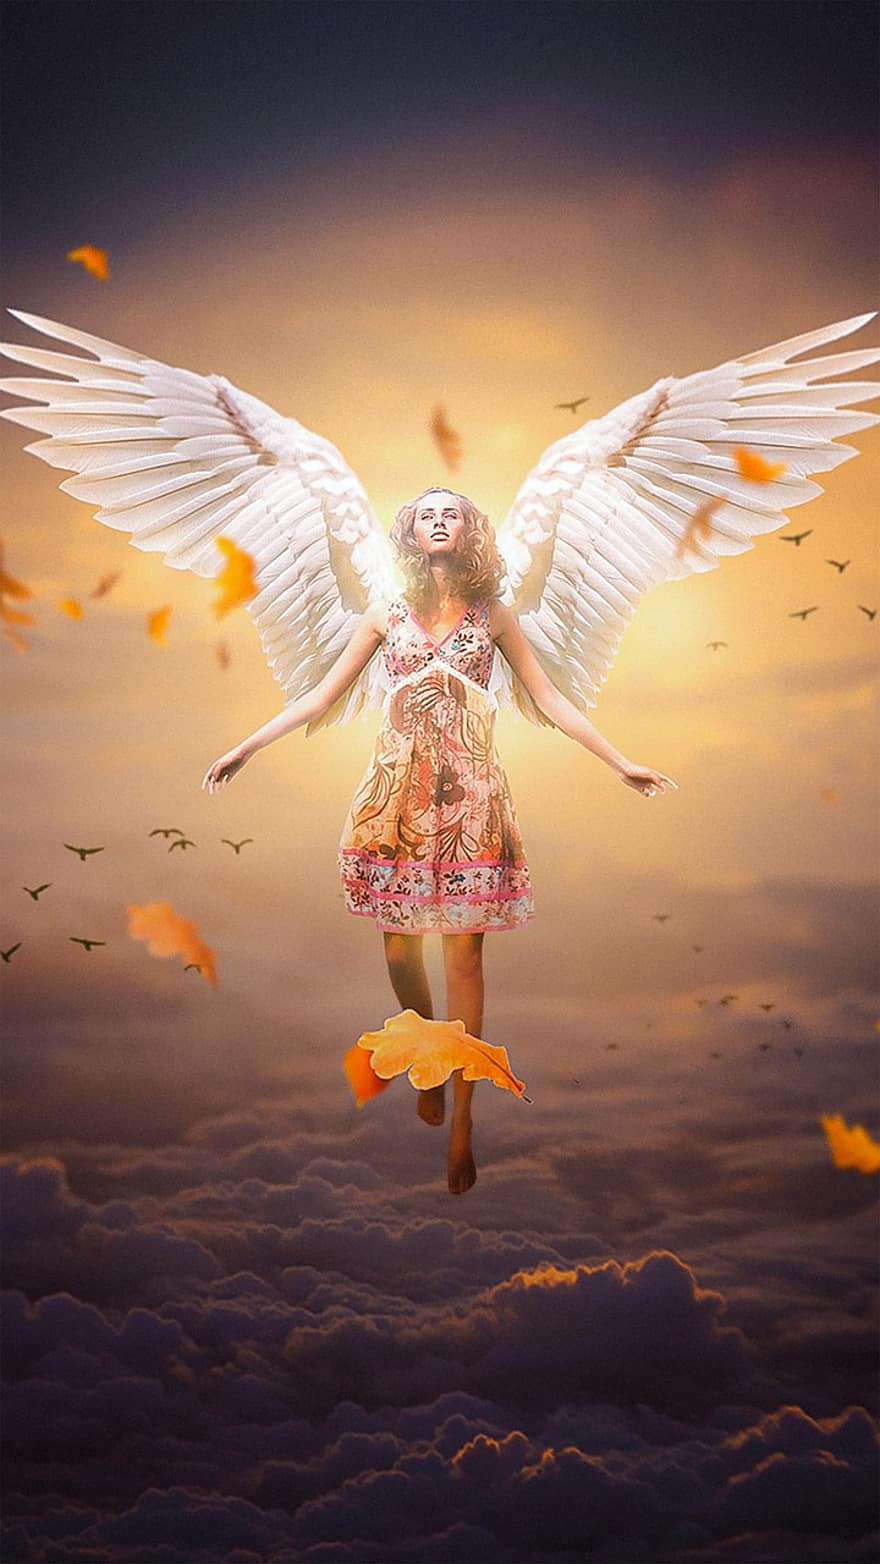 天使、女性、翼、天使の翼、ファンタジー、女性の天使、夢、空、女の子、フォトモンタージュ、写真編集